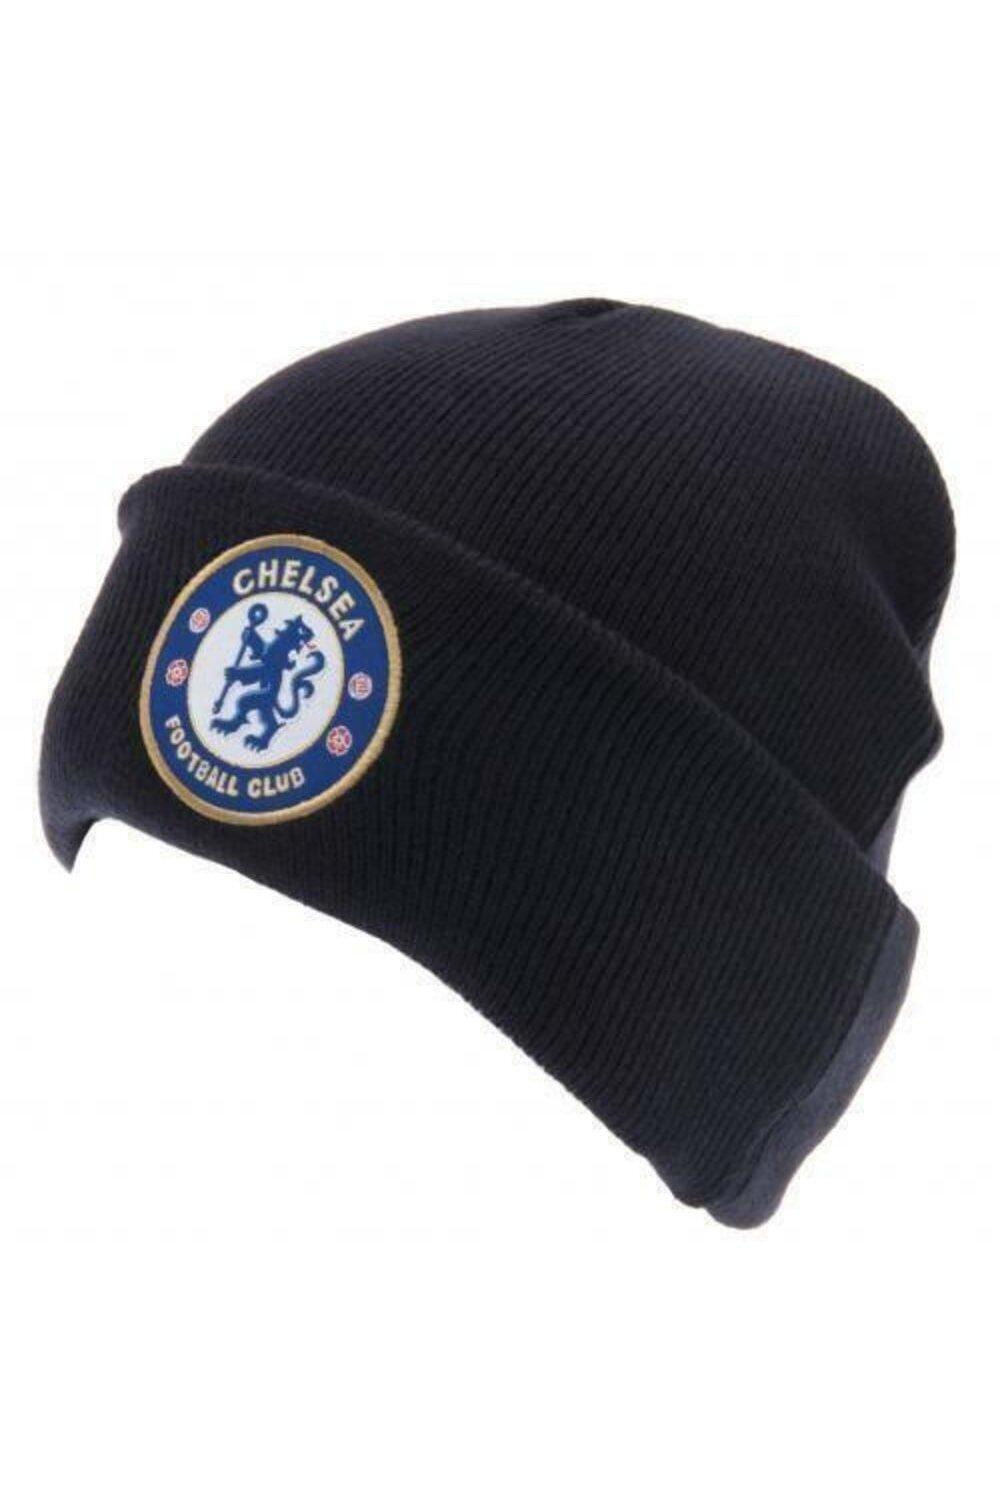 Официальная вязаная шапка с отворотом Chelsea FC, темно-синий шапка гриффиндор с гербом универсальный детский размер